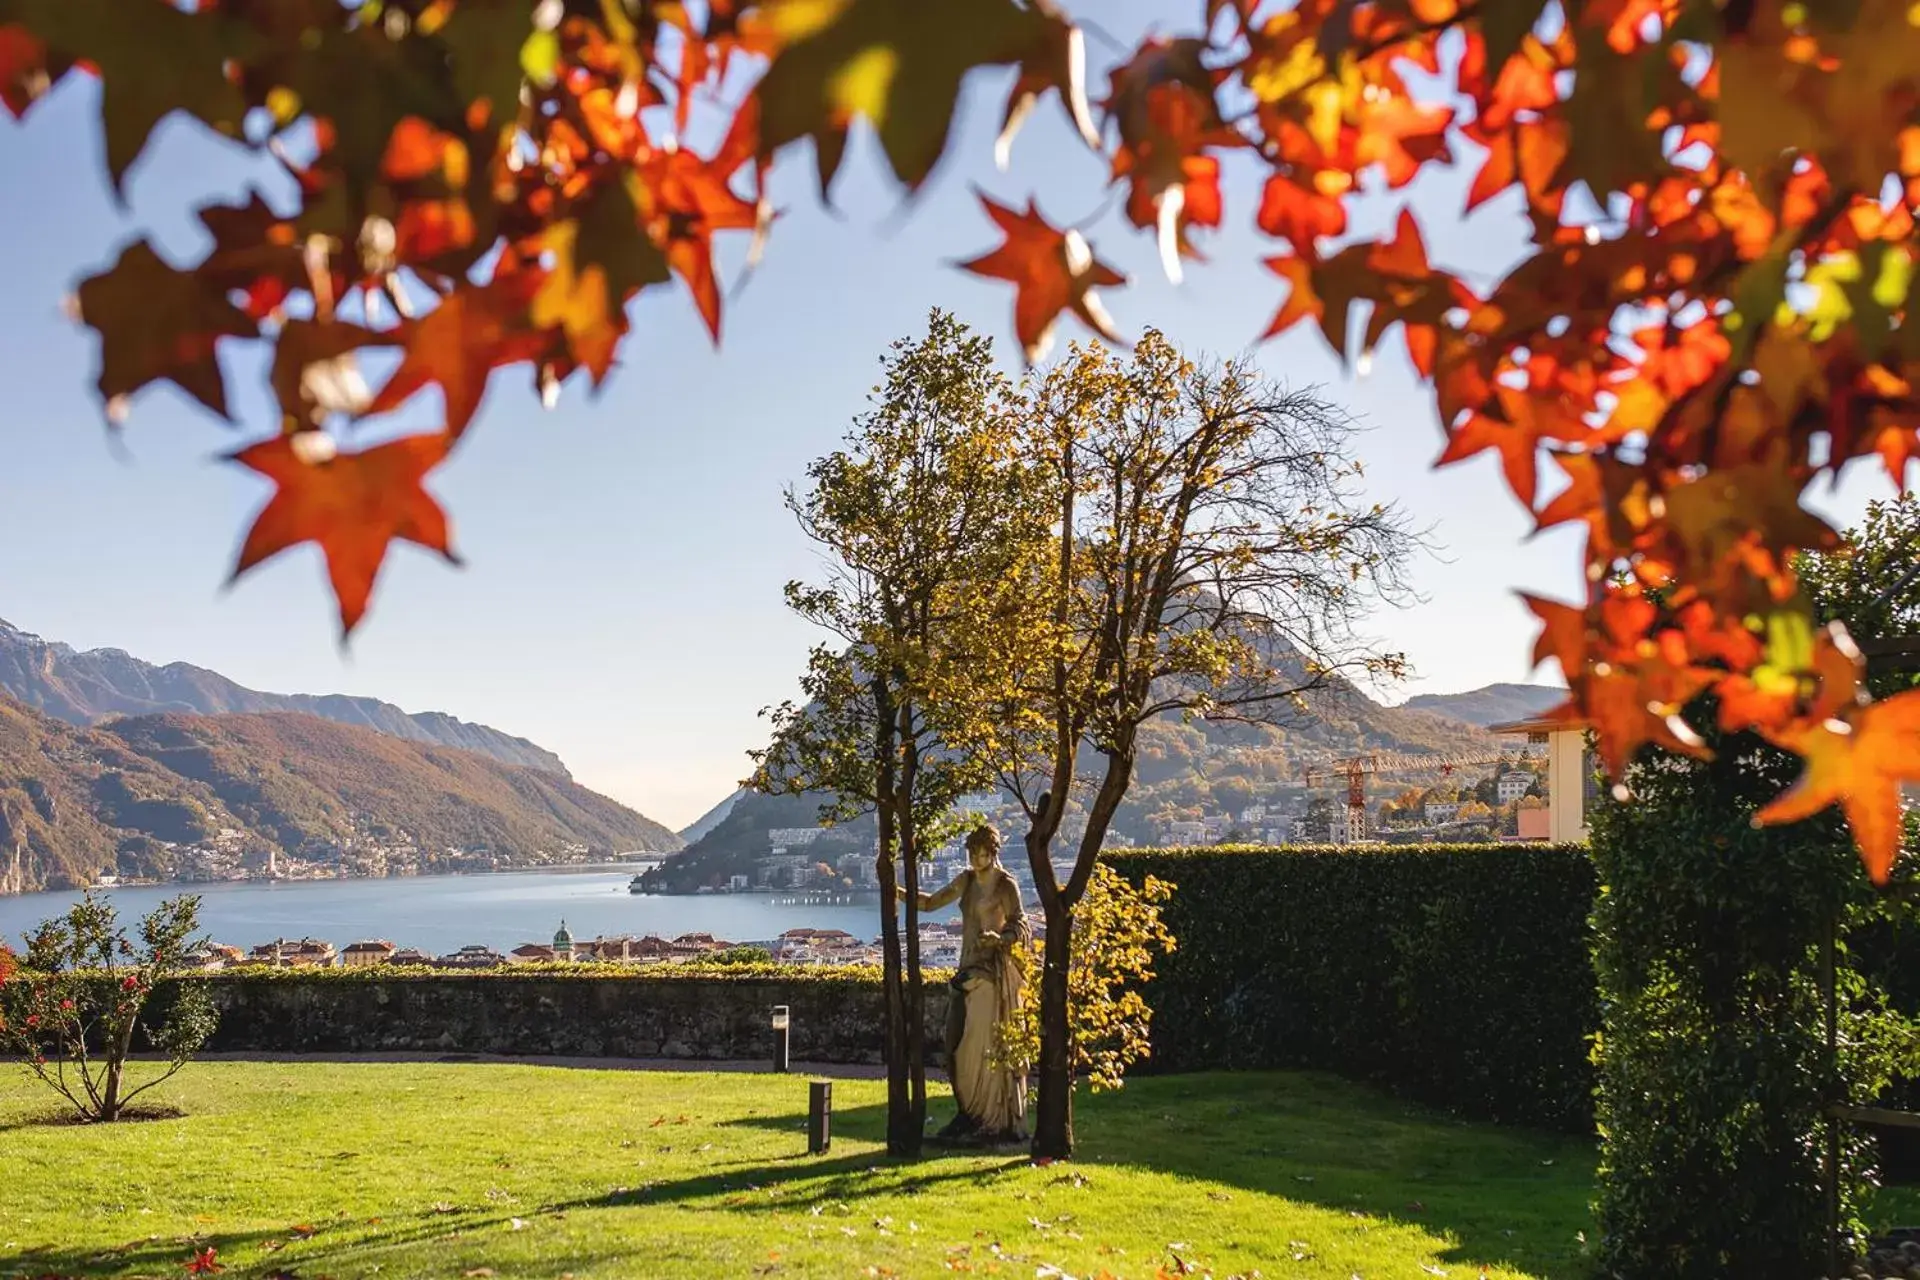 Autumn in Villa Sassa Hotel, Residence & Spa - Ticino Hotels Group